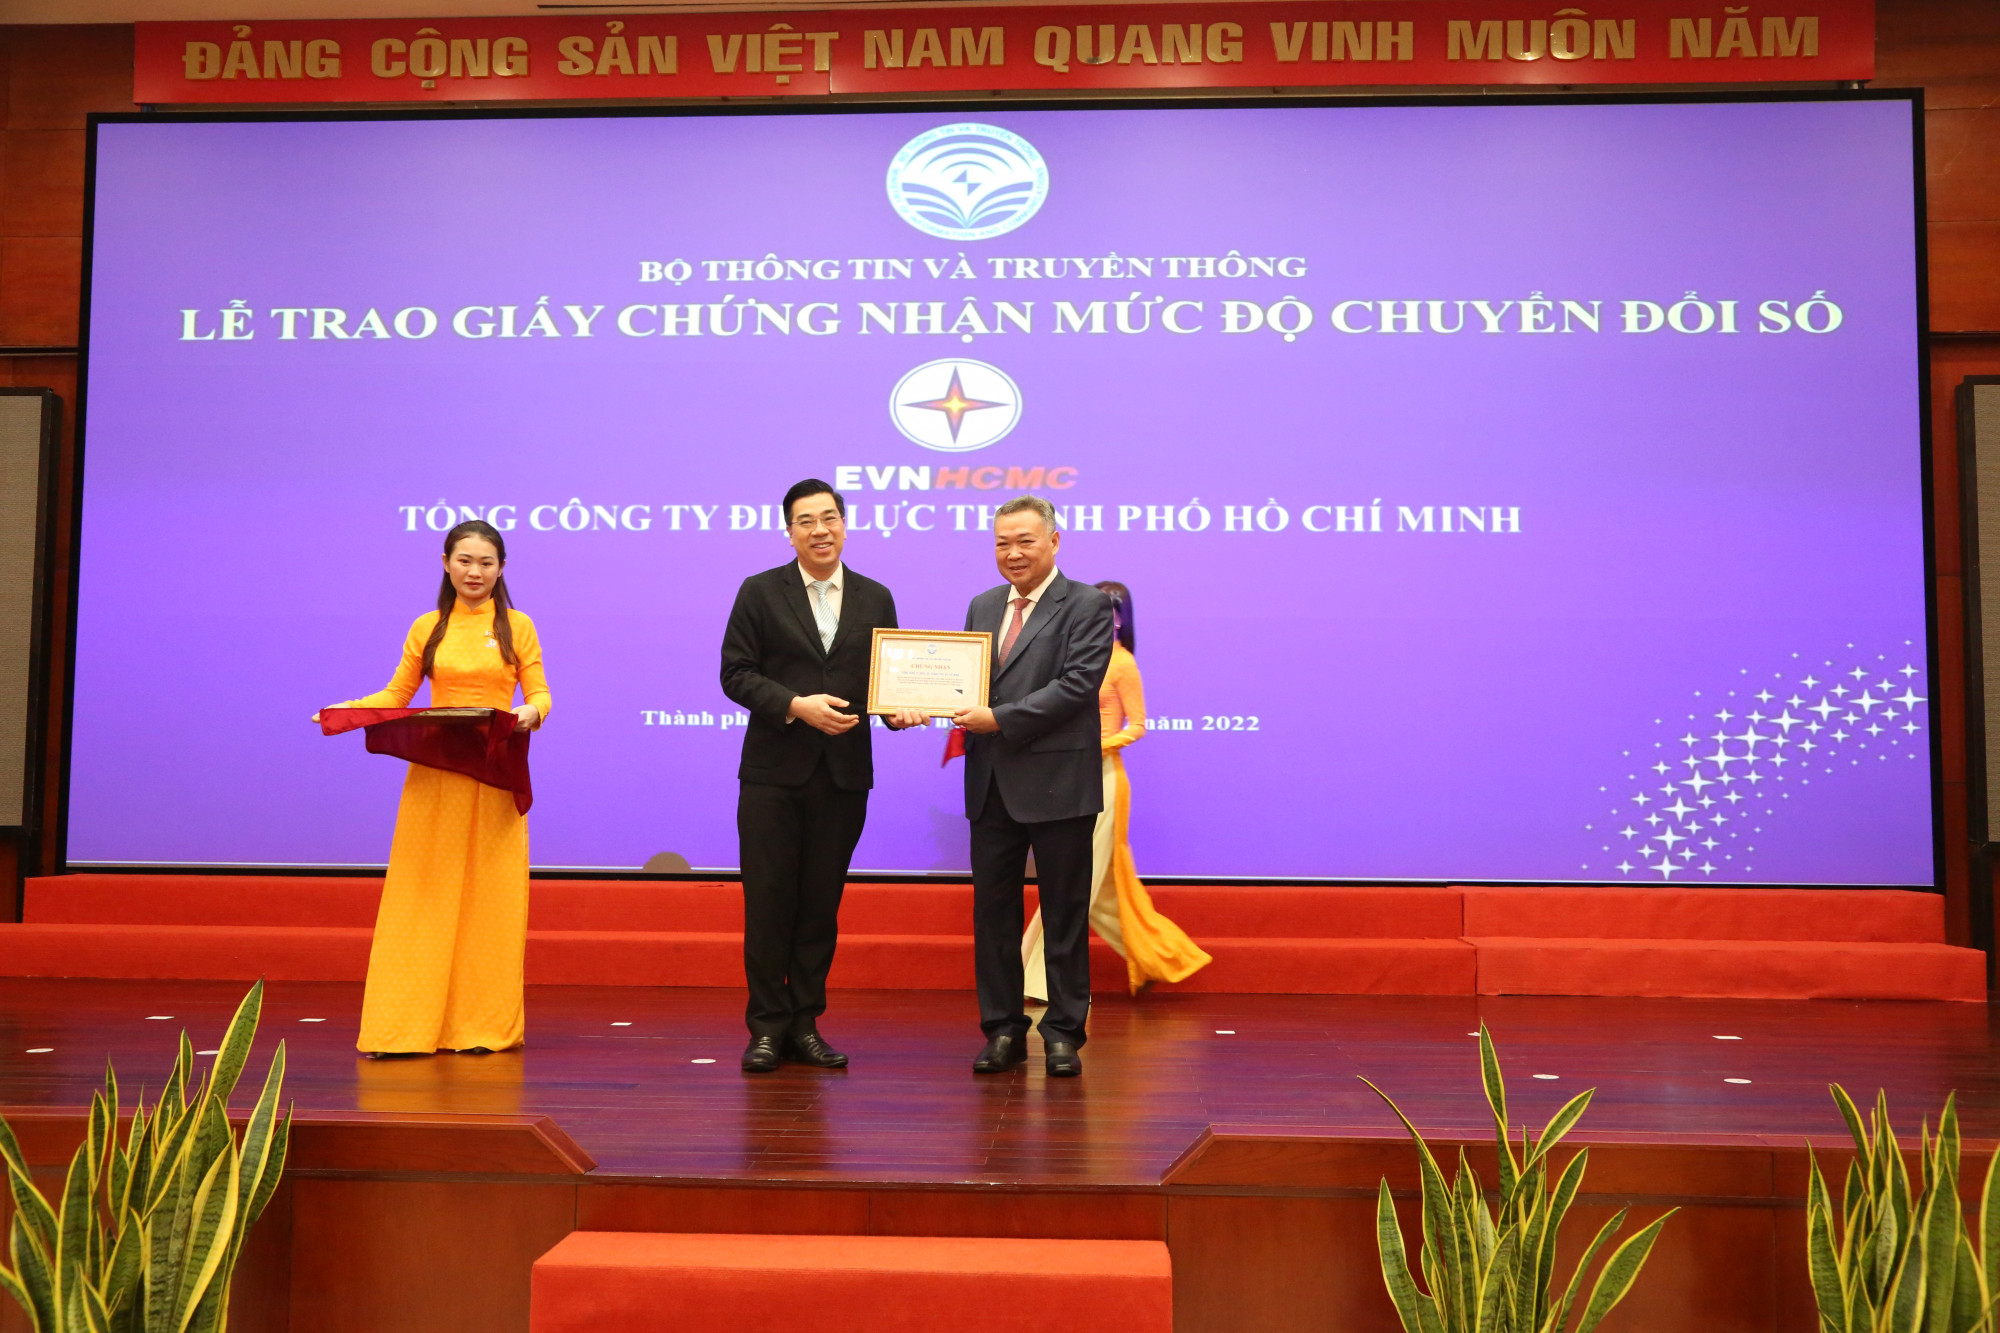 Ông Phạm Quốc Bảo (bên phải) - Chủ tịch Hội đồng Thành viên Tổng công ty Điện lực TPHCM nhận giấy chứng nhận mức độ chuyển đổi số từ Bộ Thông tin - Truyền thông - Ảnh: EVNHCMC